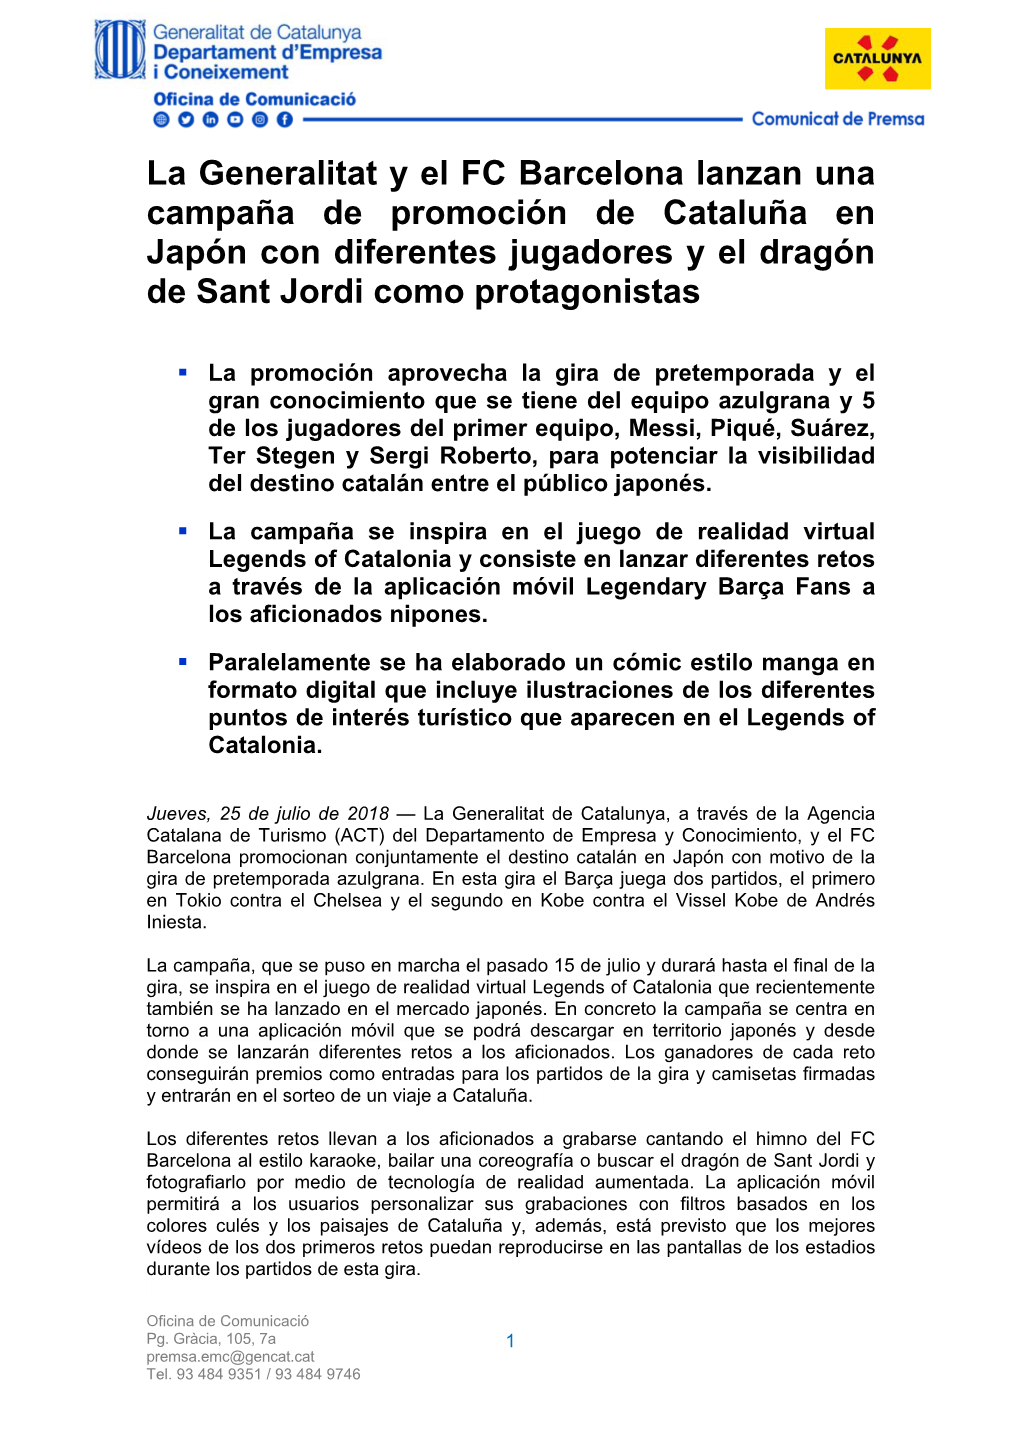 La Generalitat Y El FC Barcelona Lanzan Una Campaña De Promoción De Cataluña En Japón Con Diferentes Jugadores Y El Dragón De Sant Jordi Como Protagonistas